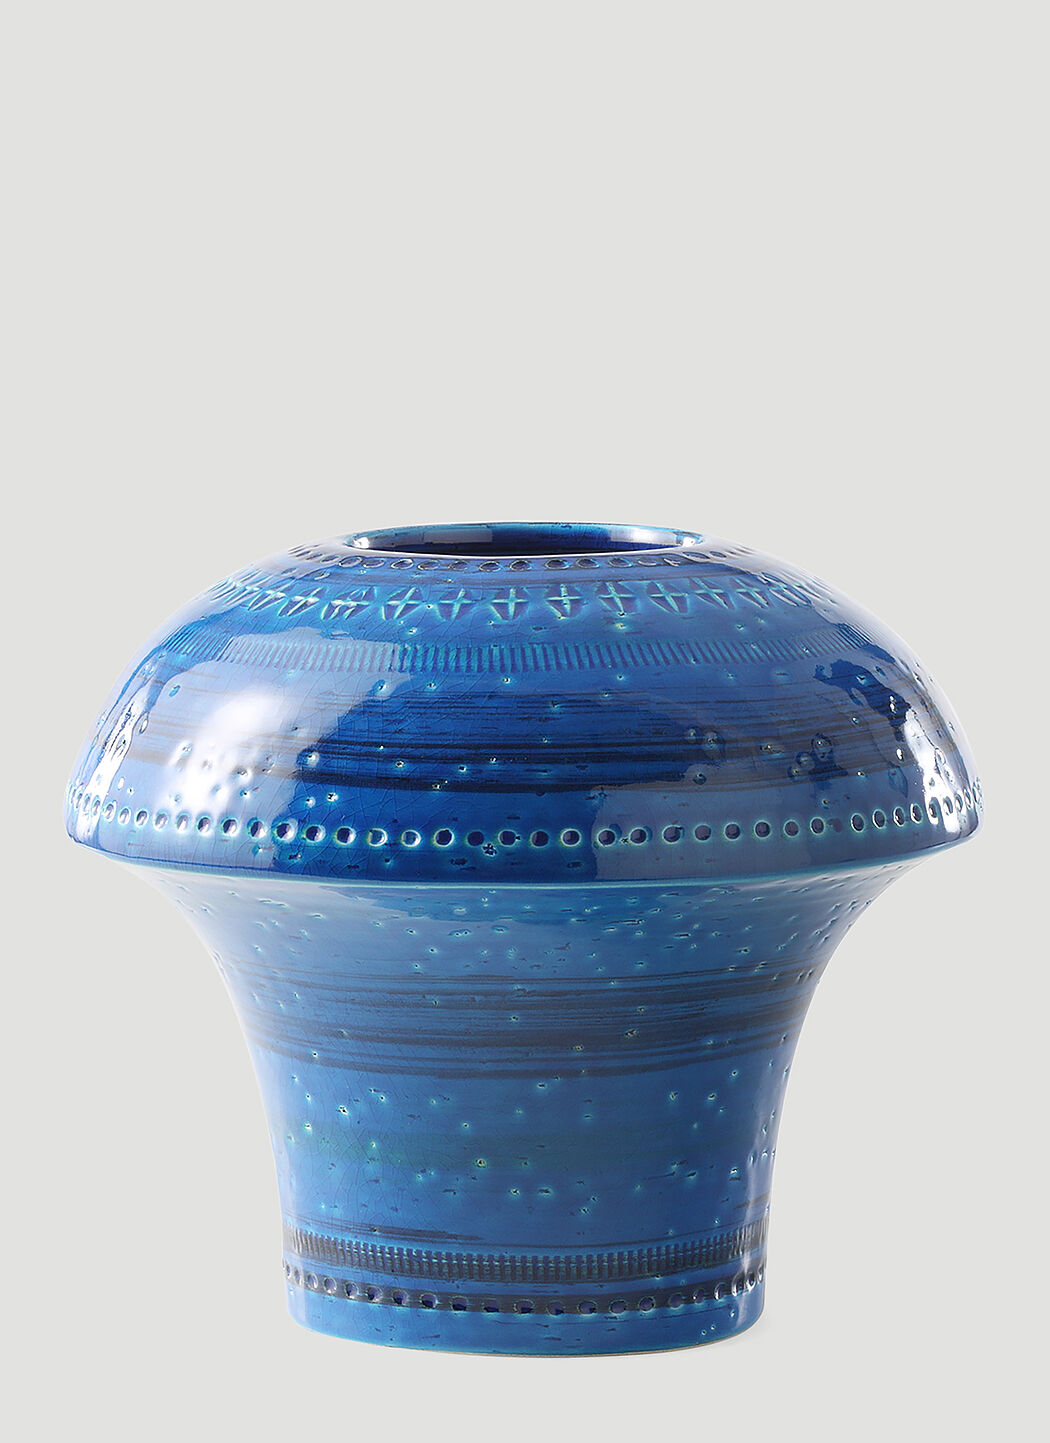 Bitossi Ceramiche Rimini Blu Mushroom Vase Blue wps0644263